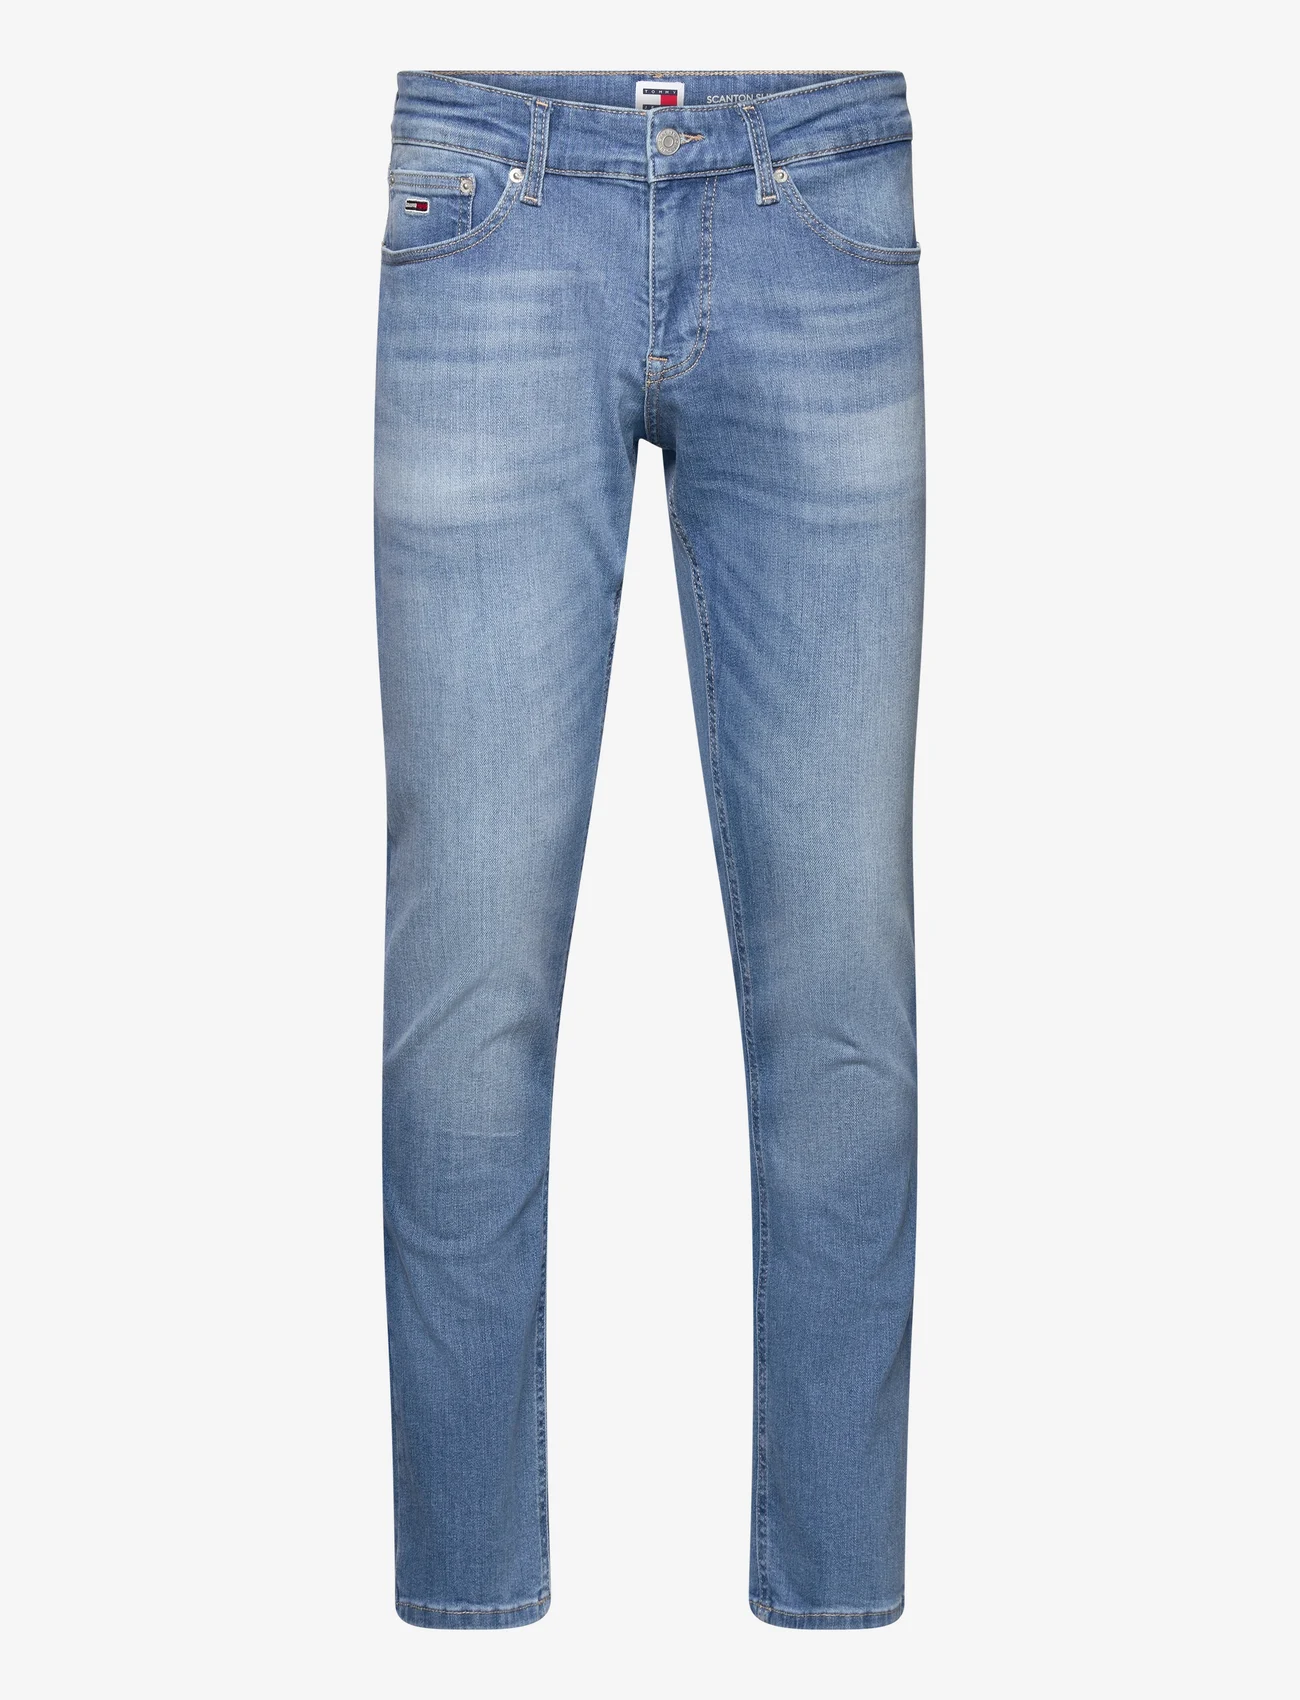 Tommy Jeans - SCANTON SLIM AH1236 - slim fit jeans - denim medium - 0